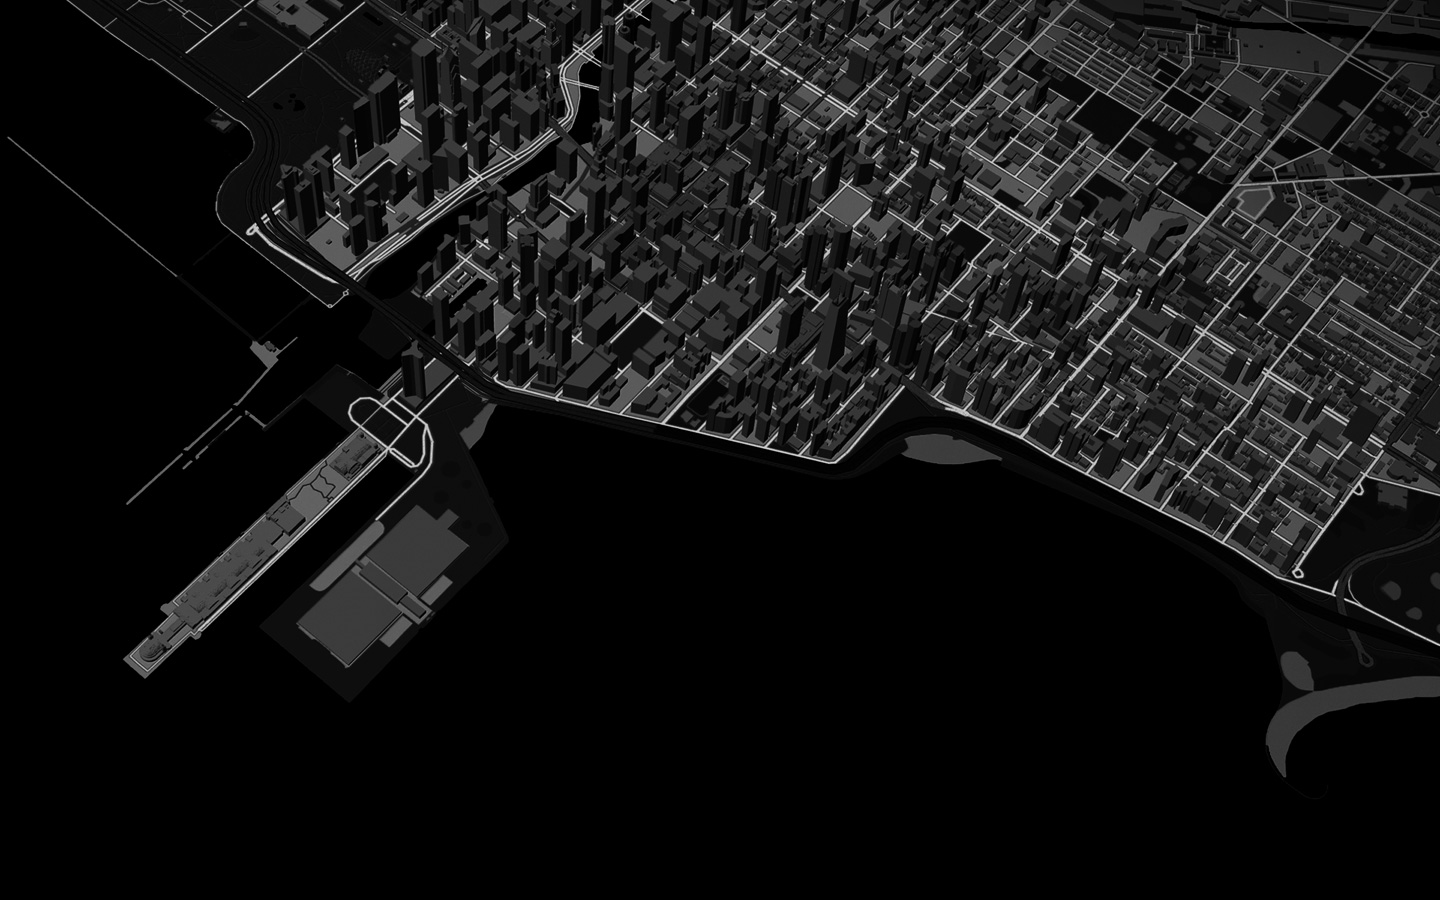 صورة متحركة لخط يُمثّل مساراً للعدّائين من خلال عرض الخرائط ثلاثية الأبعاد لمنظر المدينة